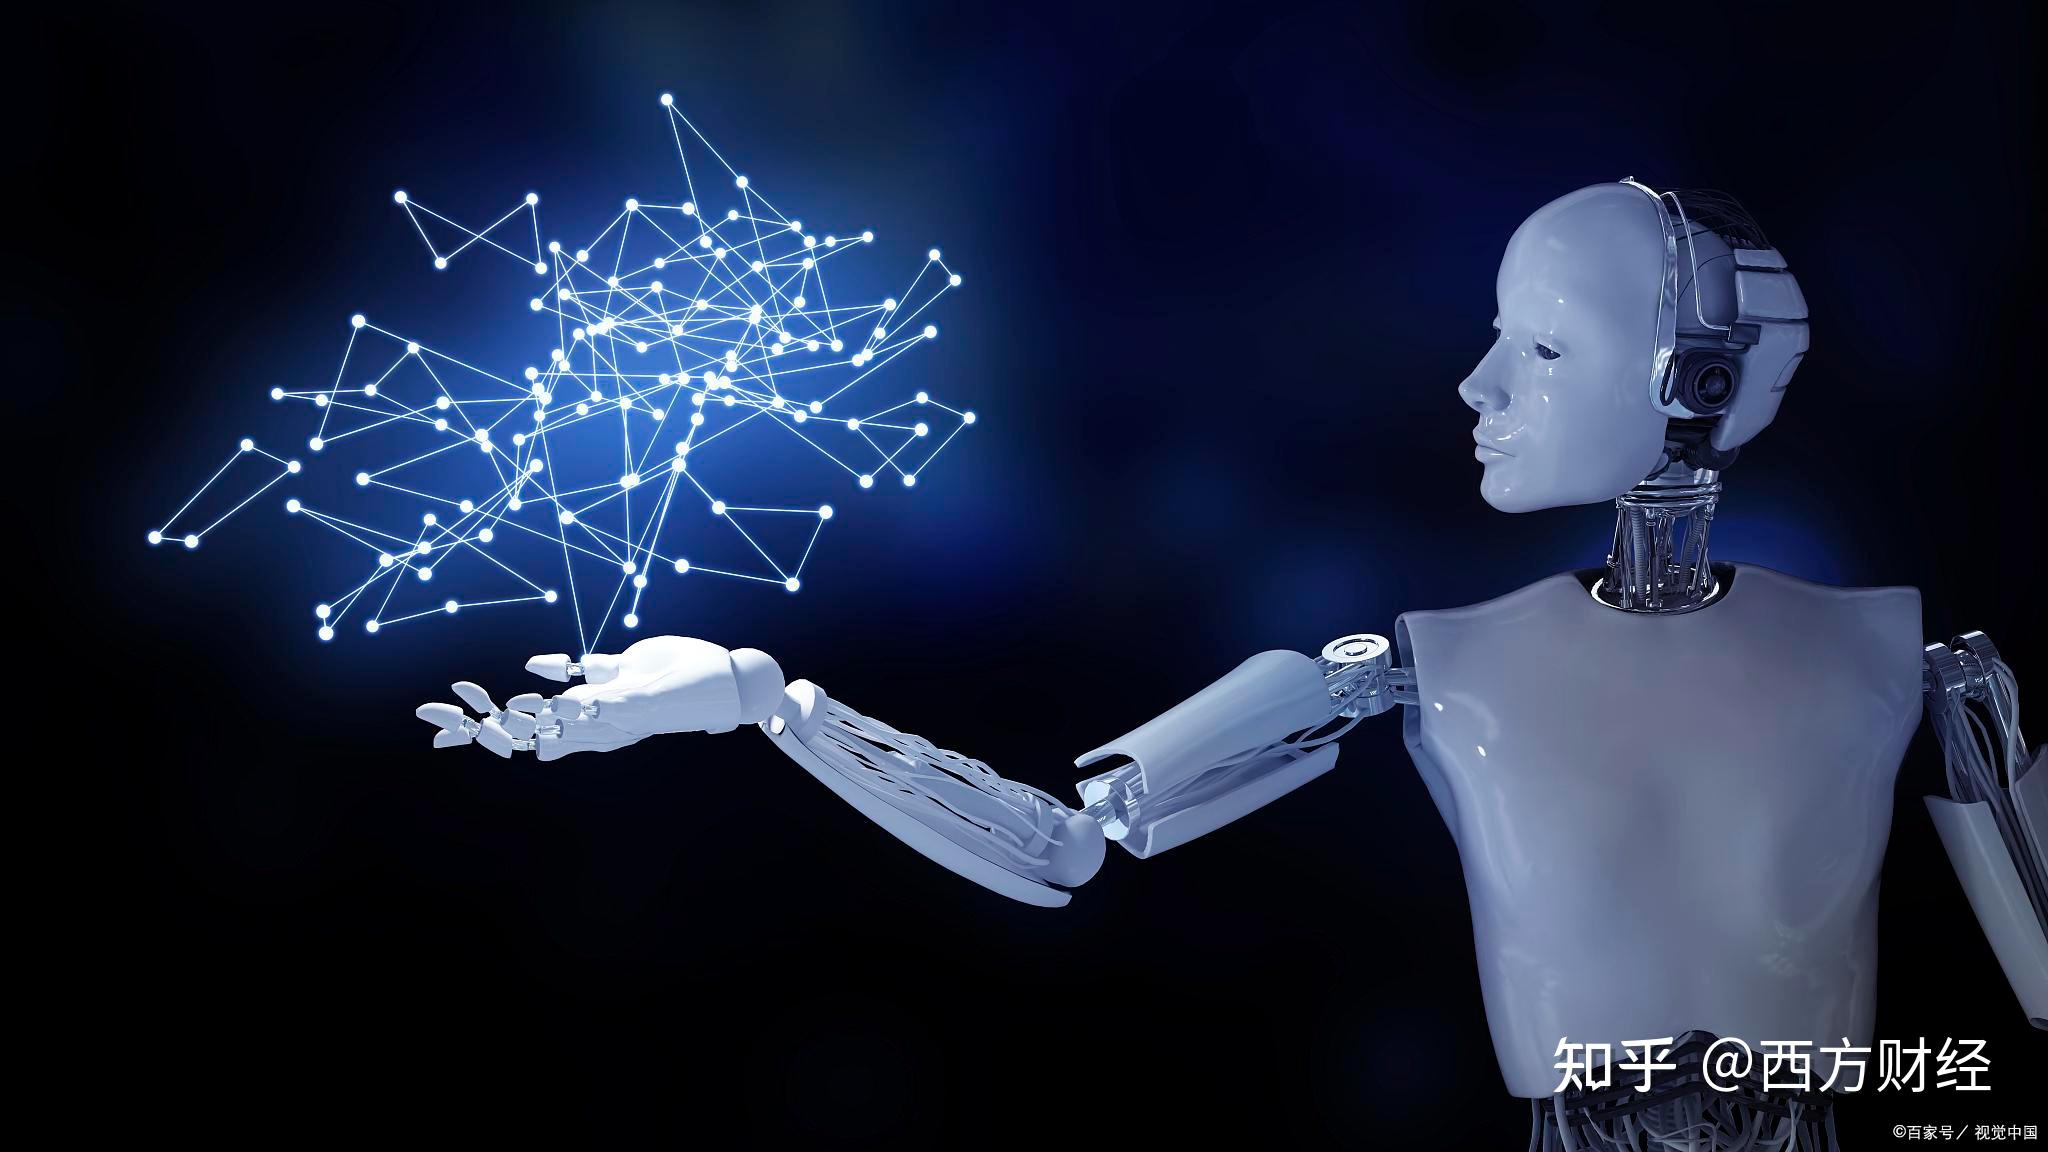 【物联网】2021年人工智能将如何发展？这里有4个预测-卓源股份